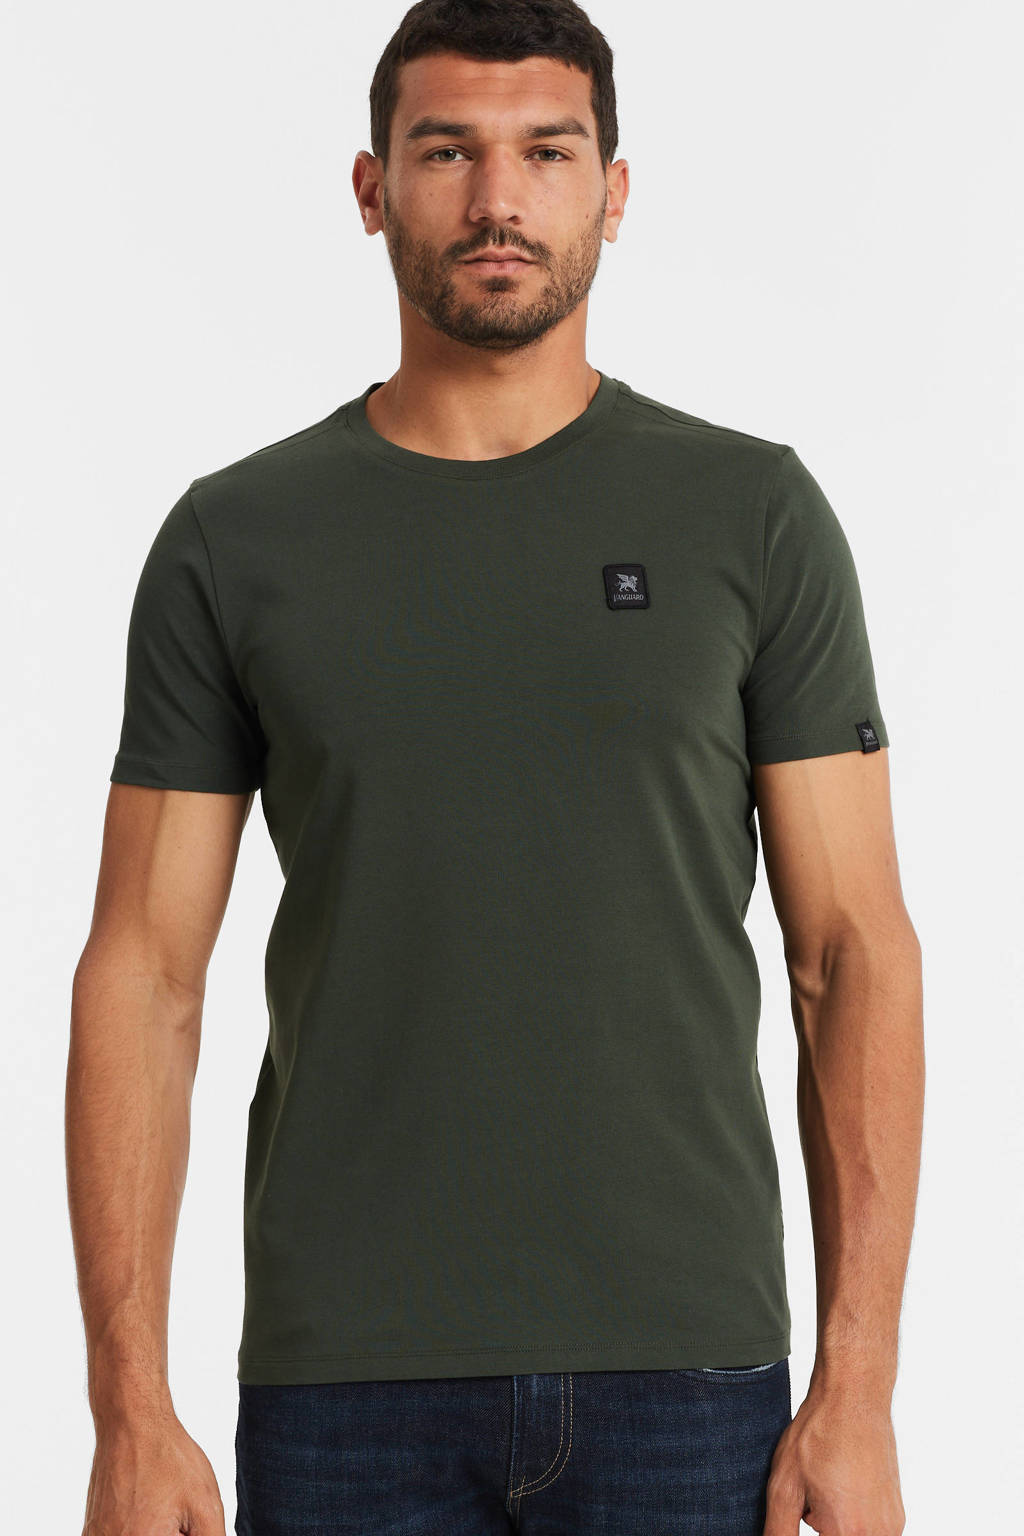 Vanguard T-shirt 6152 groen